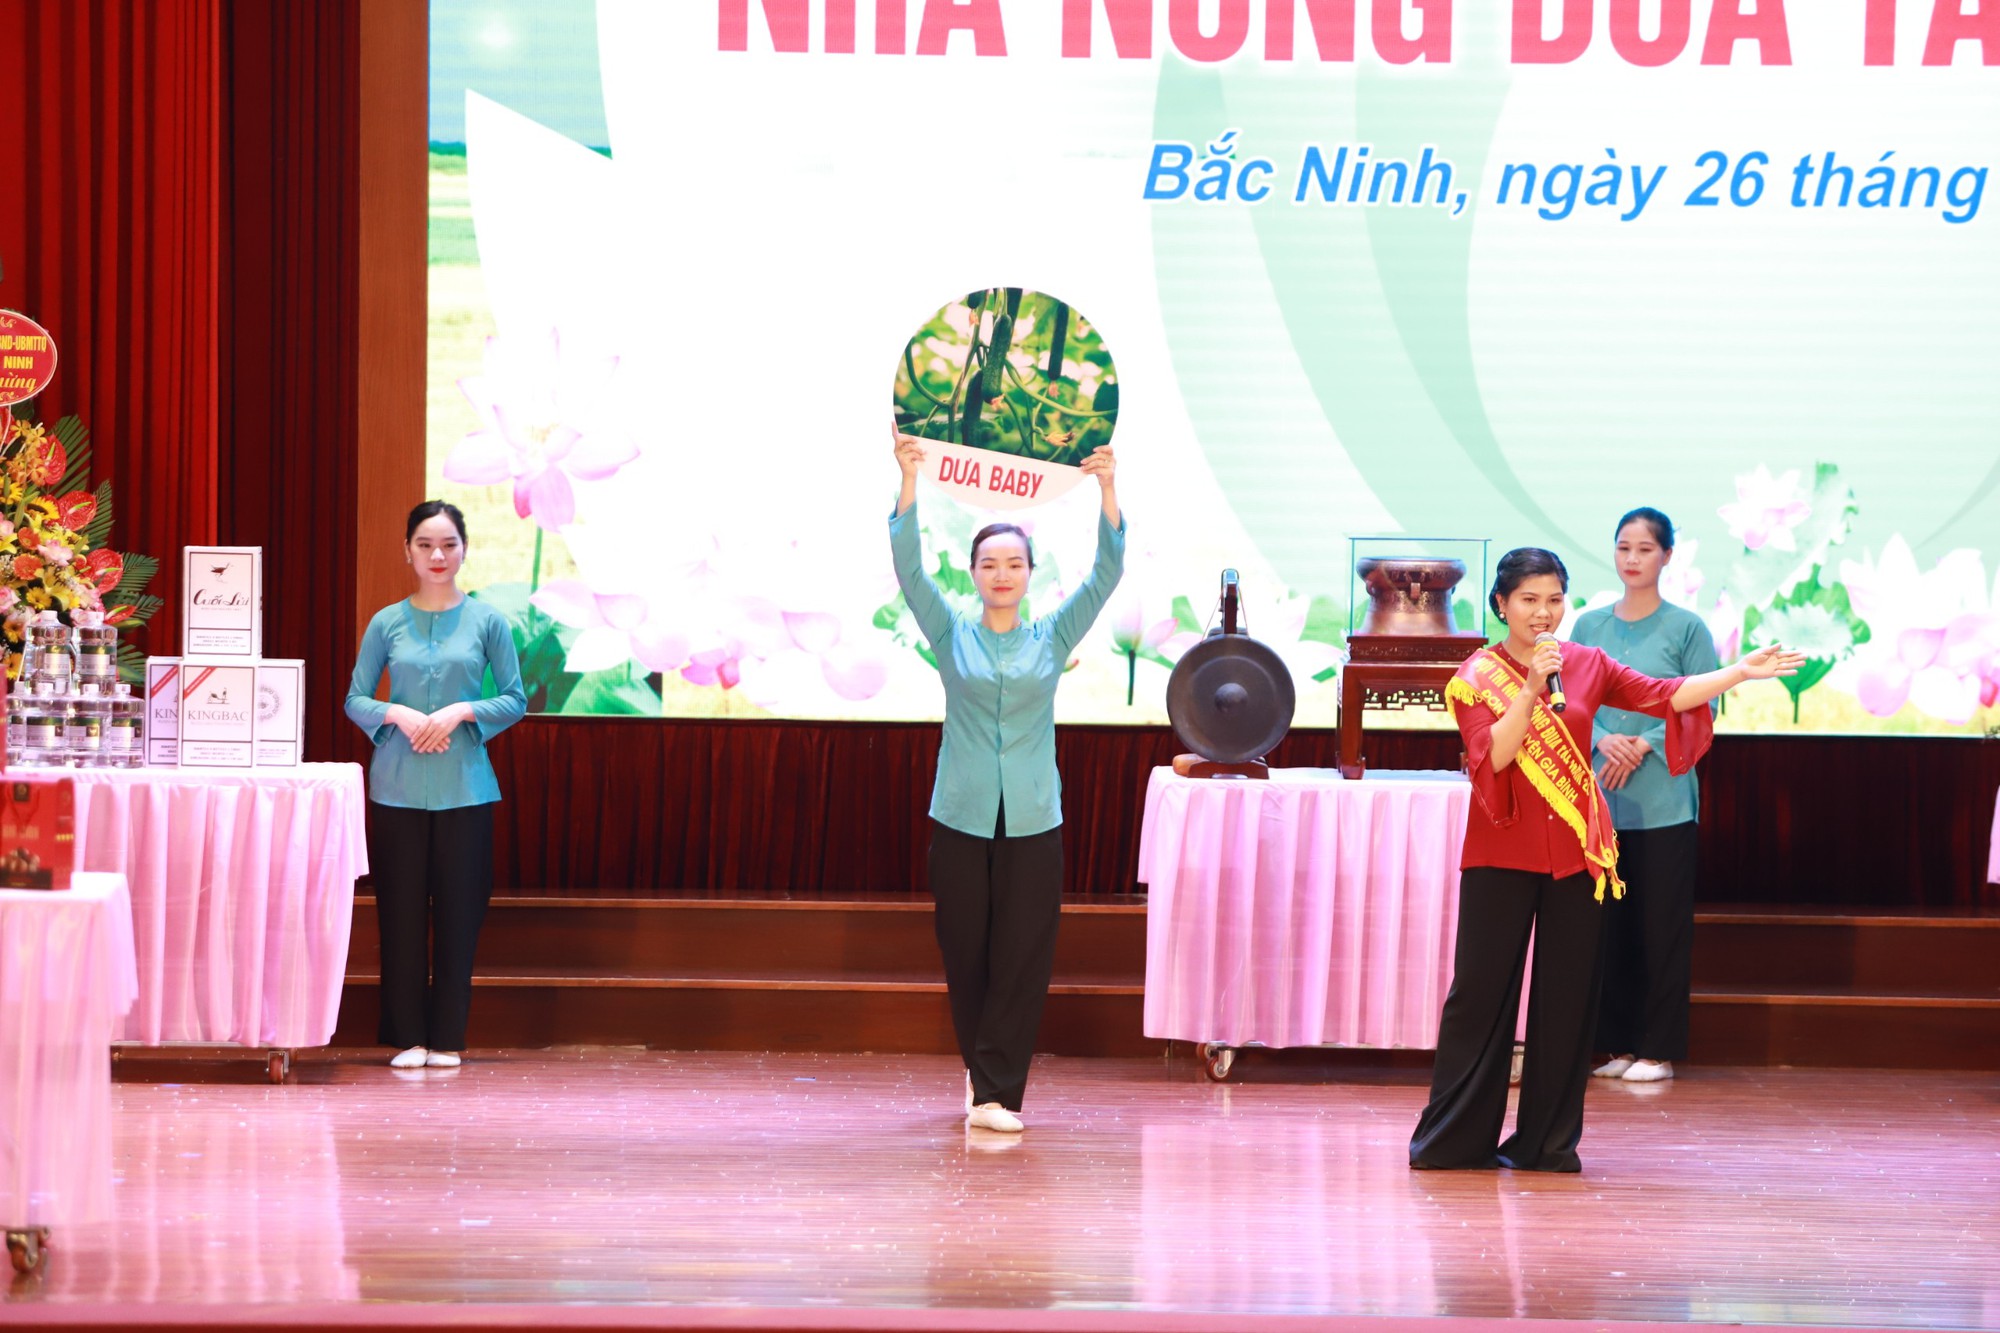 Huyện Thuận Thành xuất sắc giành giải Nhất chung cuộc Hội thi Nhà nông đua tài tỉnh Bắc Ninh năm 2022 - Ảnh 2.